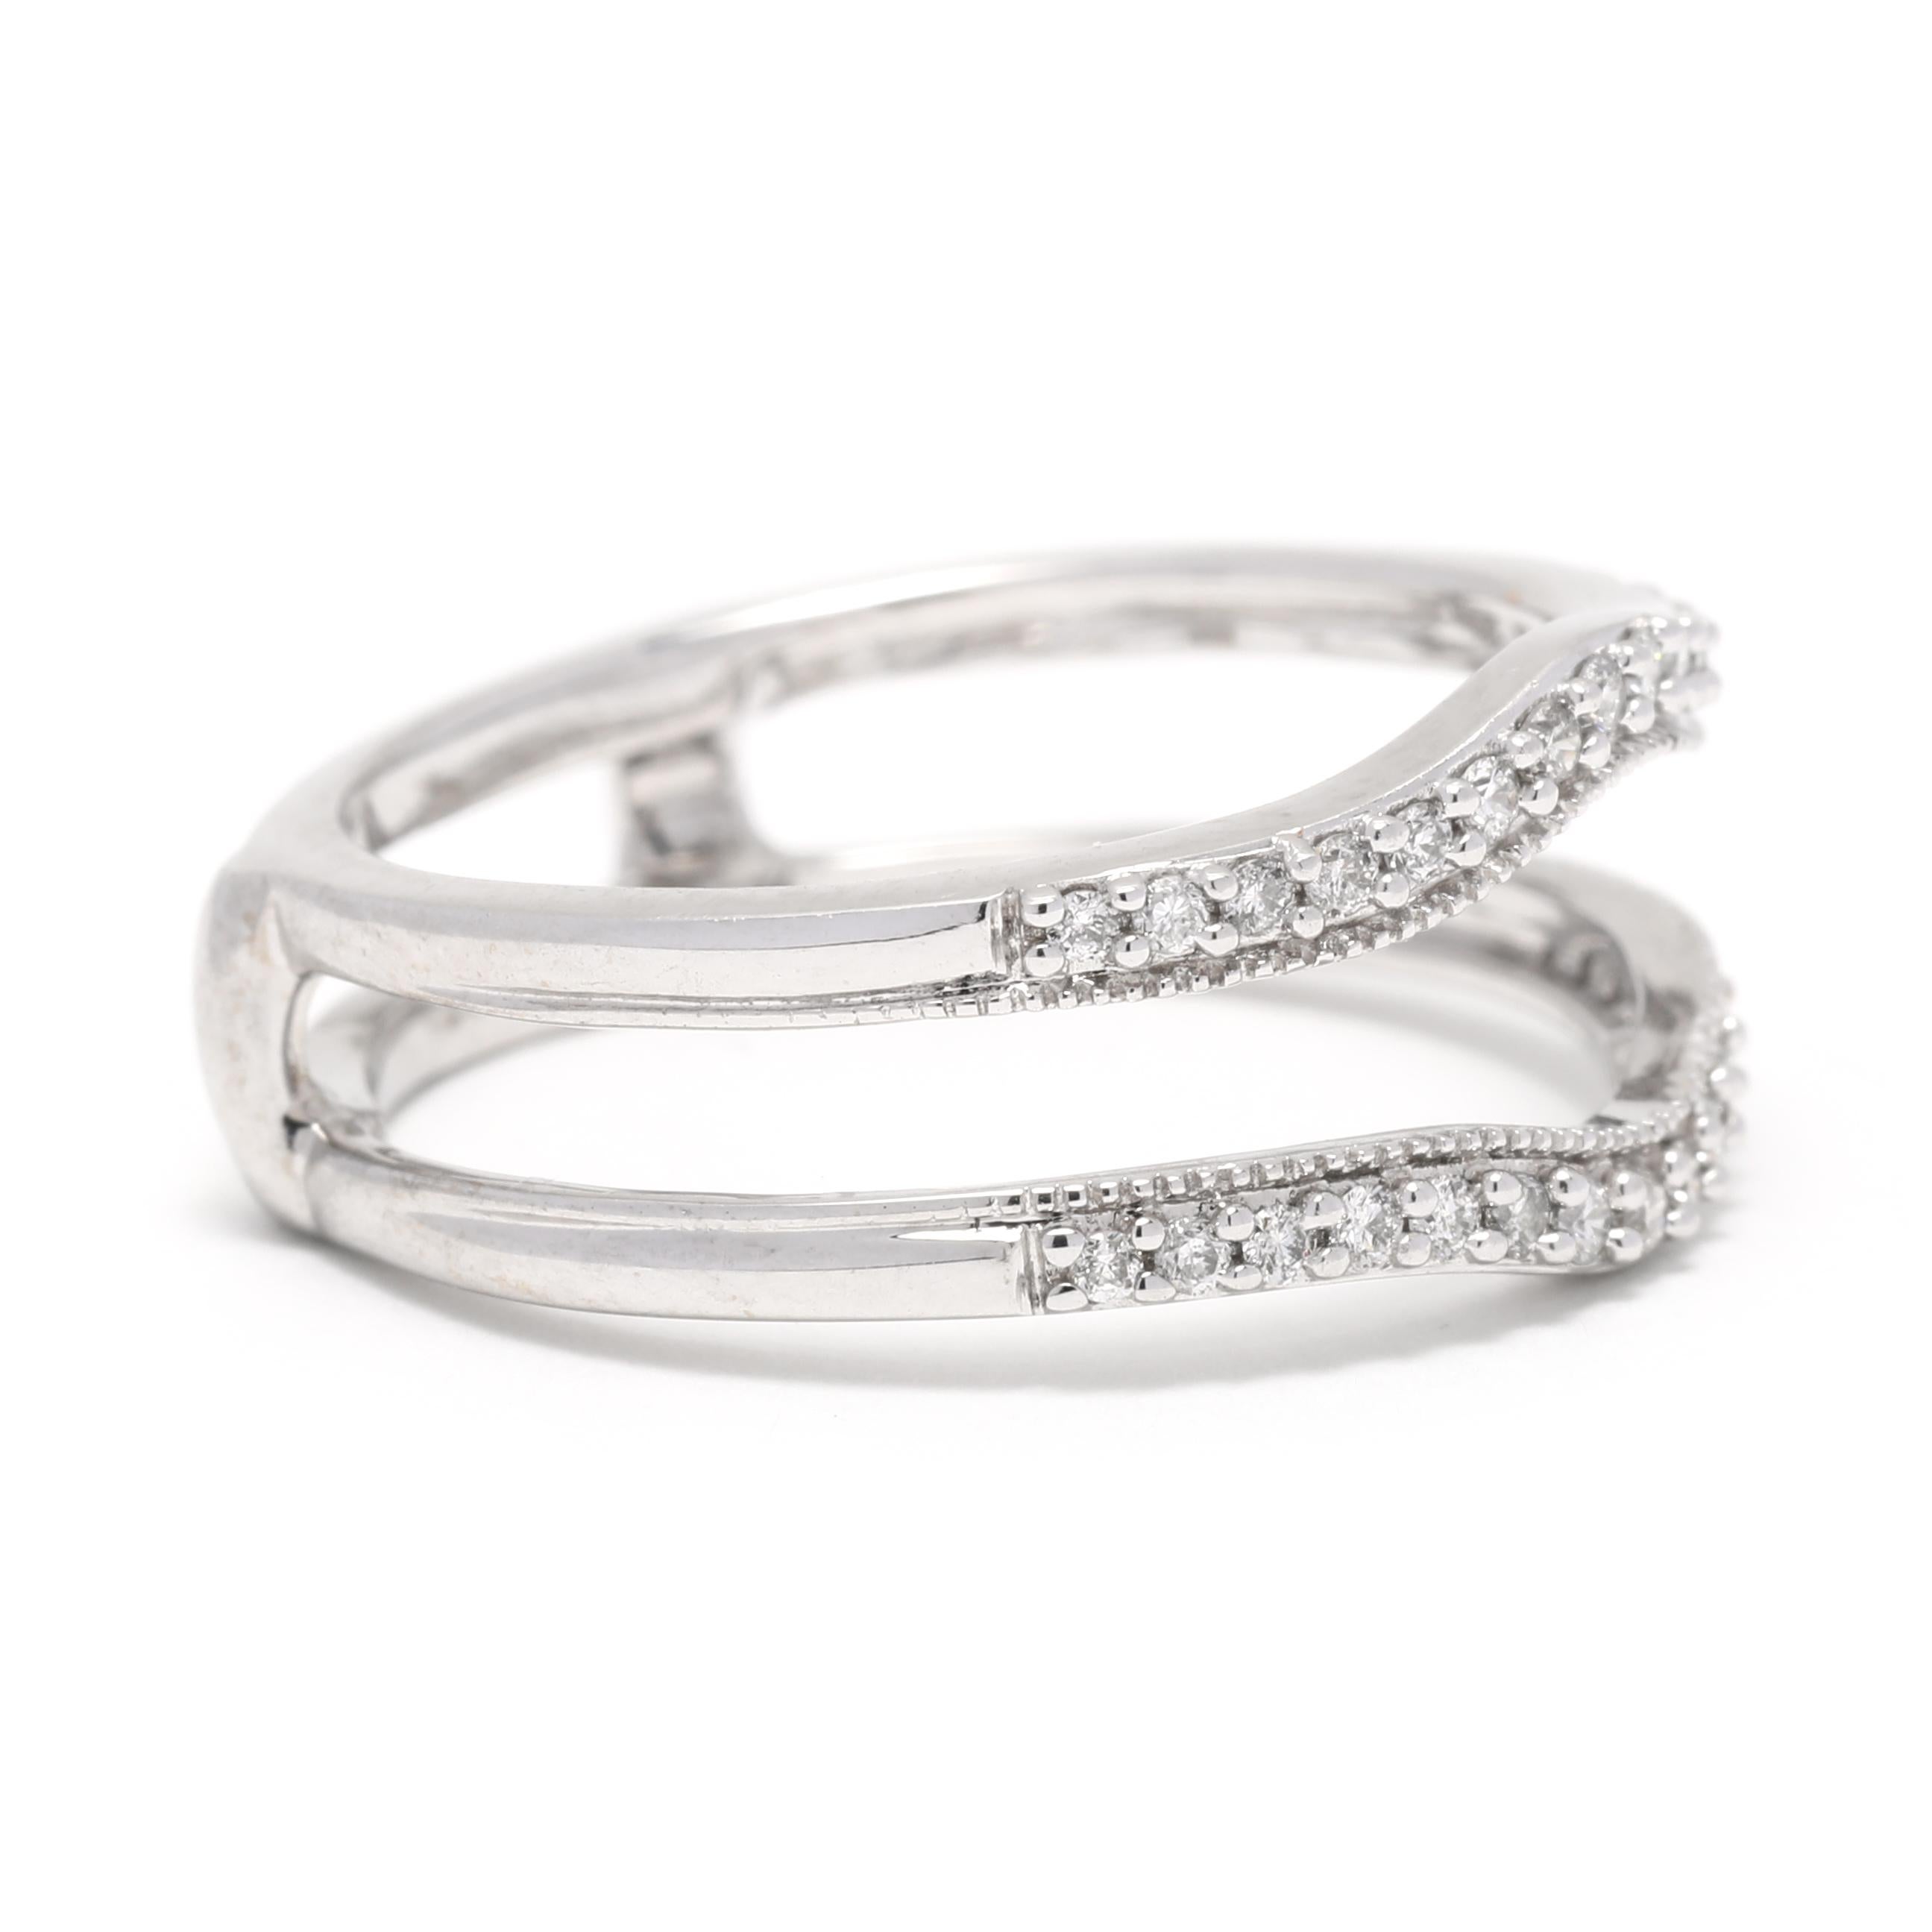 Diese wunderschöne 0,25ctw Diamant-Hochzeitsringjacke ist der perfekte Weg, um Ihren besonderen Tag noch unvergesslicher zu machen! Dieser einzigartige Ring ist aus 14-karätigem Weißgold gefertigt und weist ein prächtiges Maserungsmuster mit